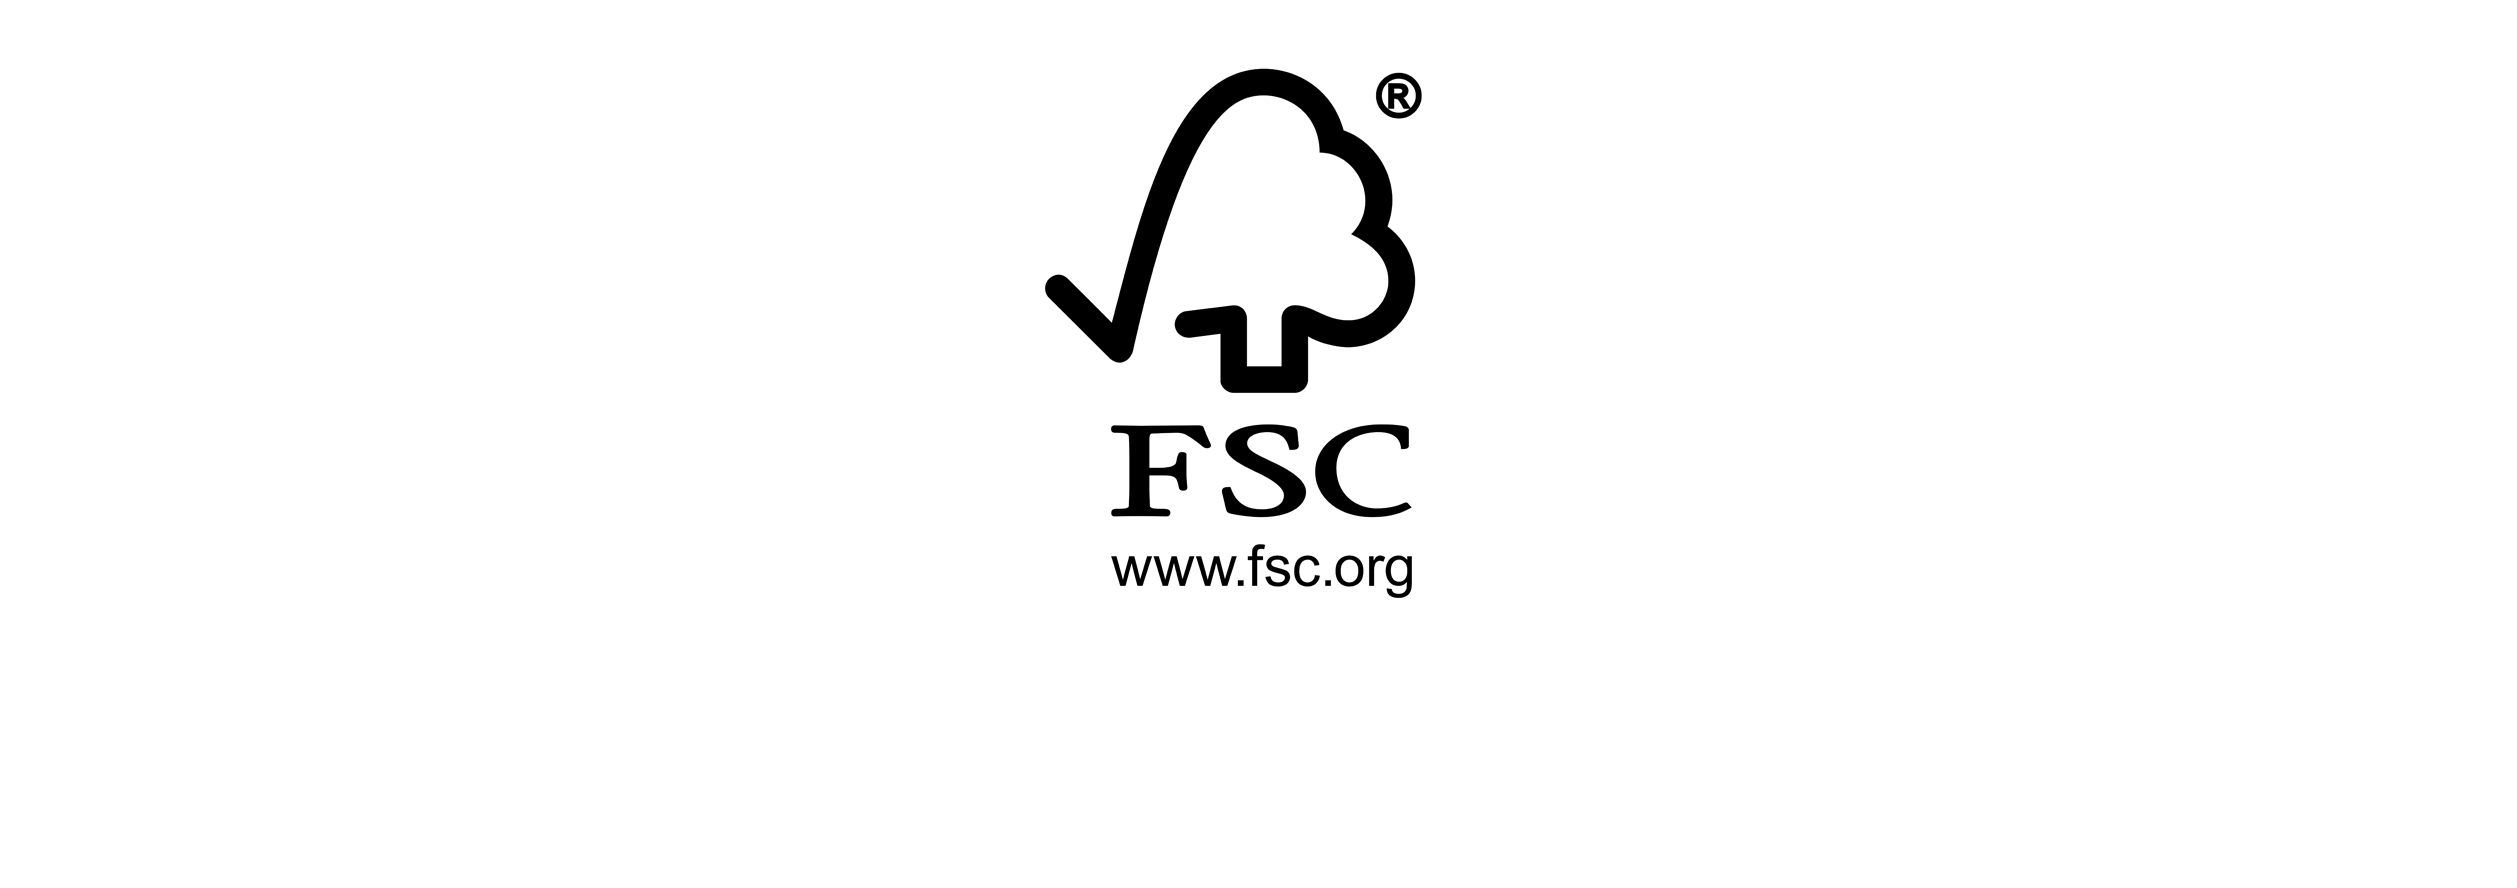 fsc_logo1